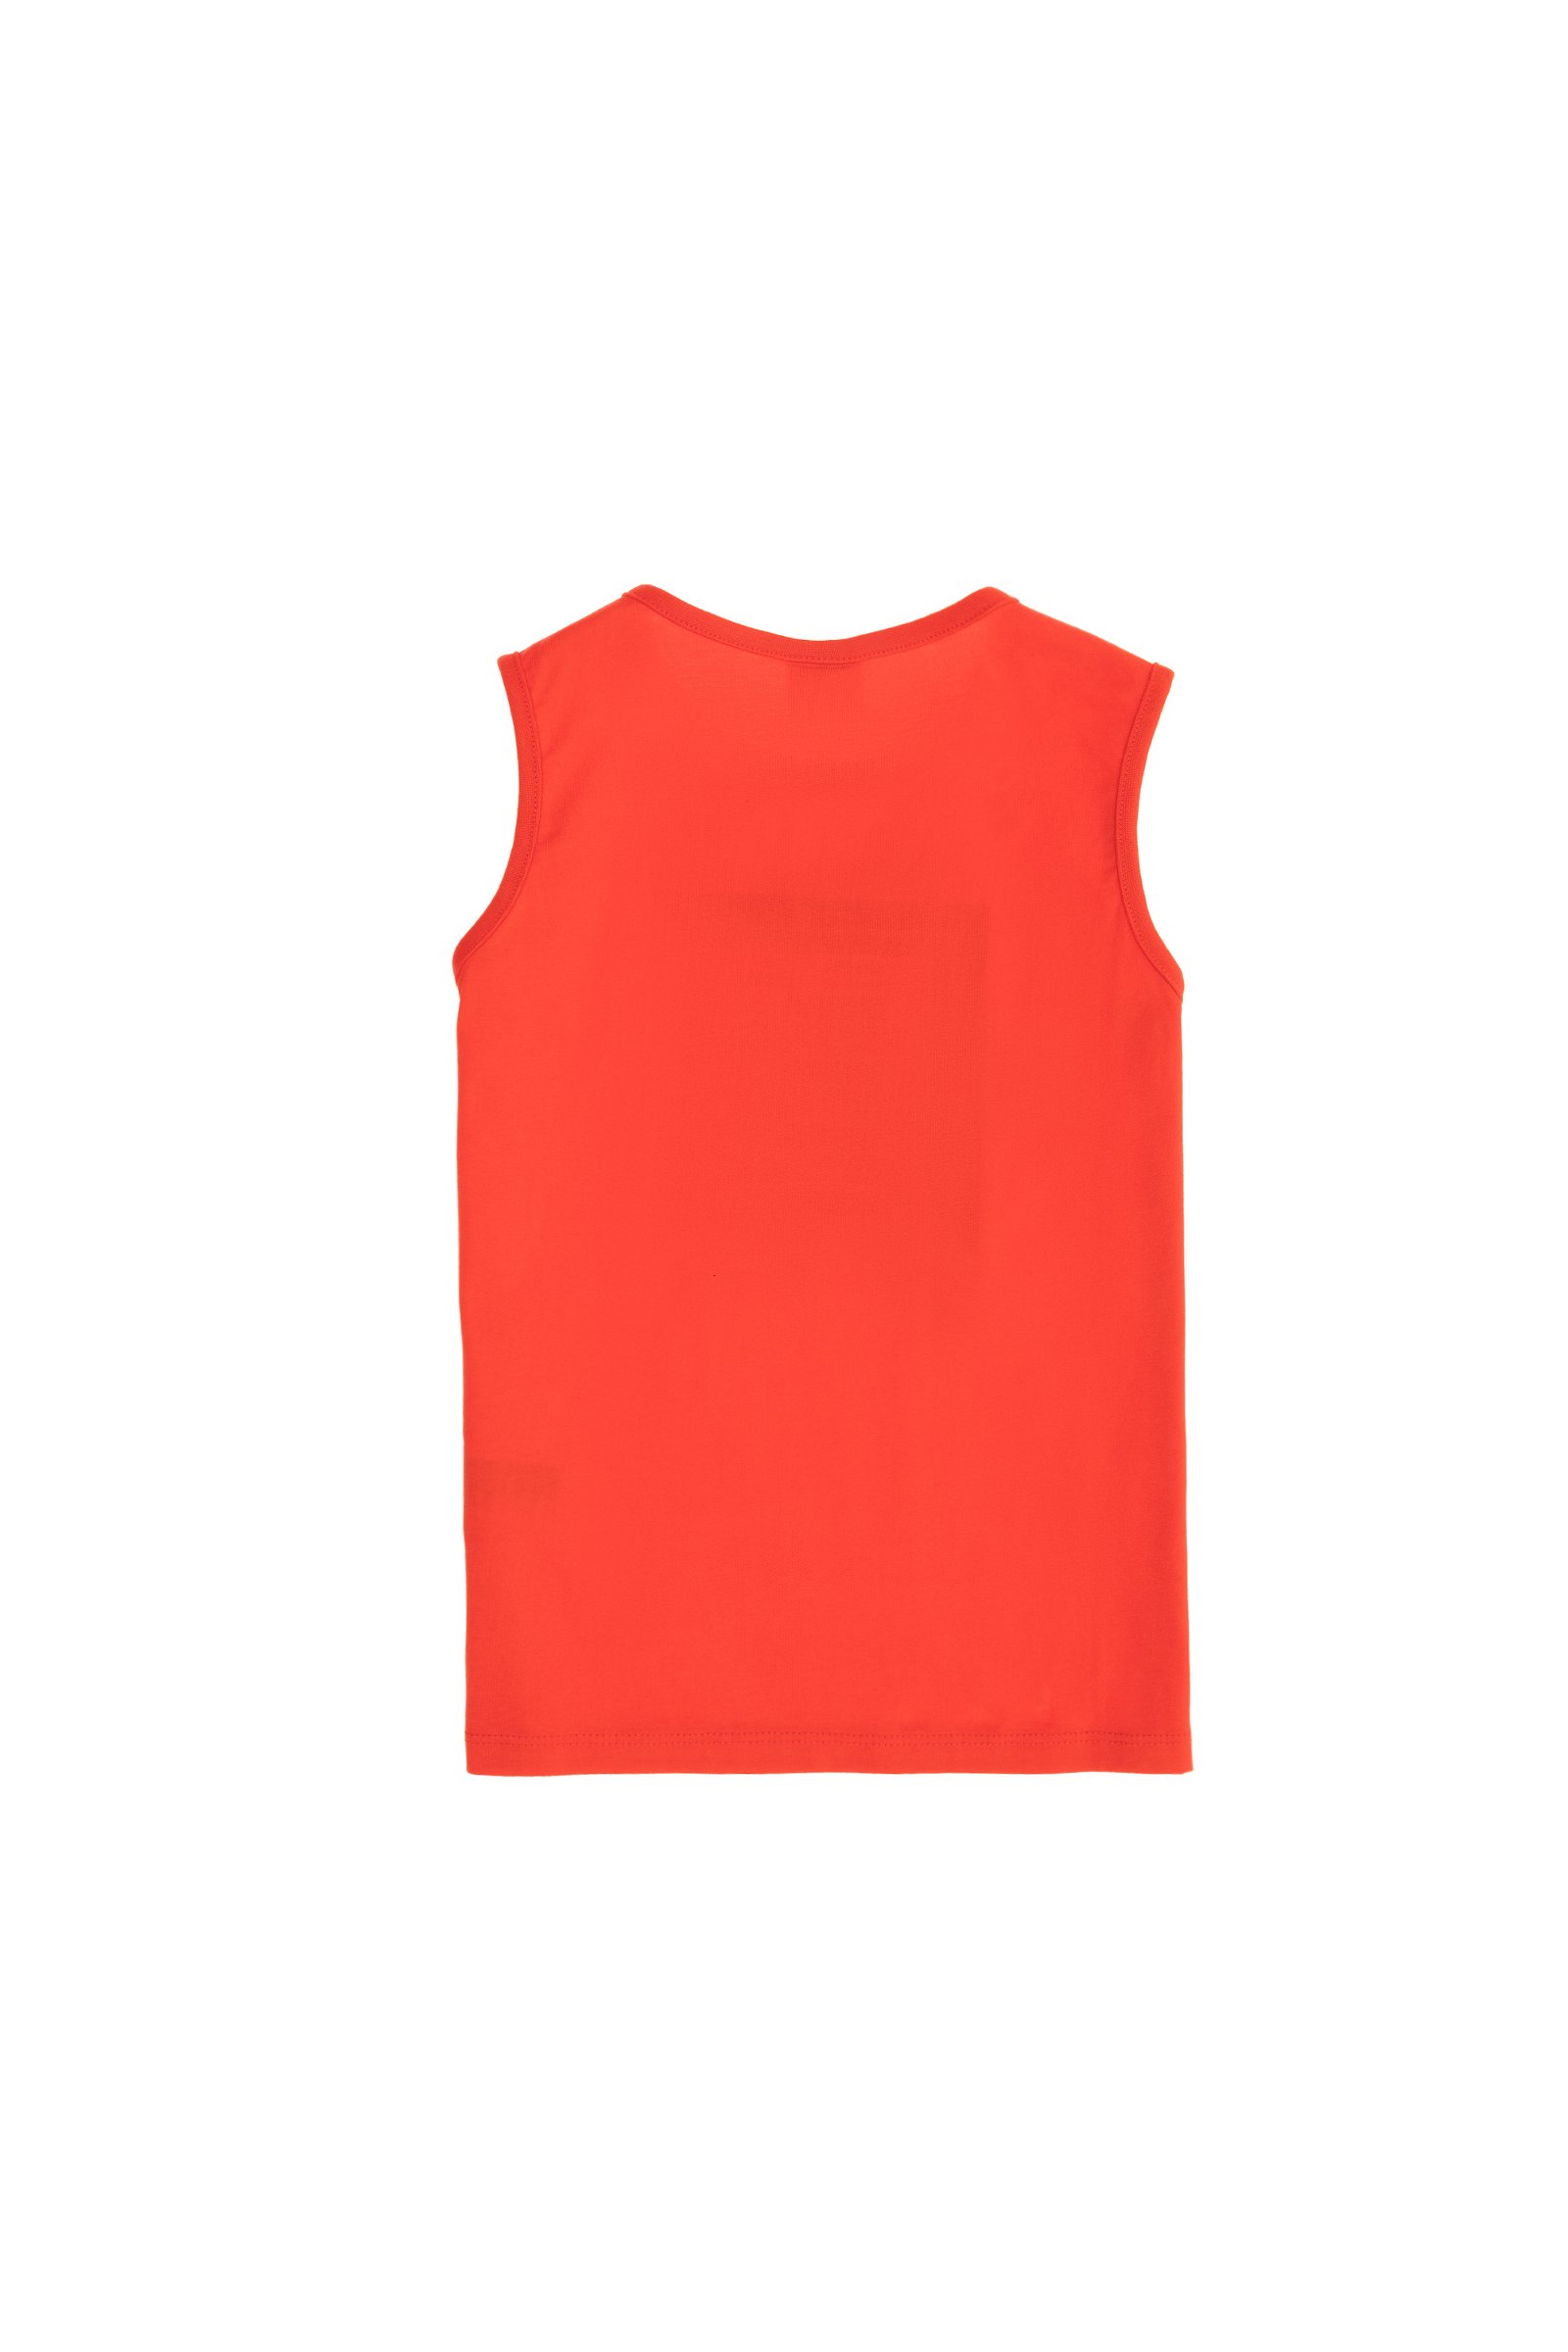 تی شرت یقه گرد قرمز  استاندارد فیت  پسرانه یو اس پولو | US POLO ASSN